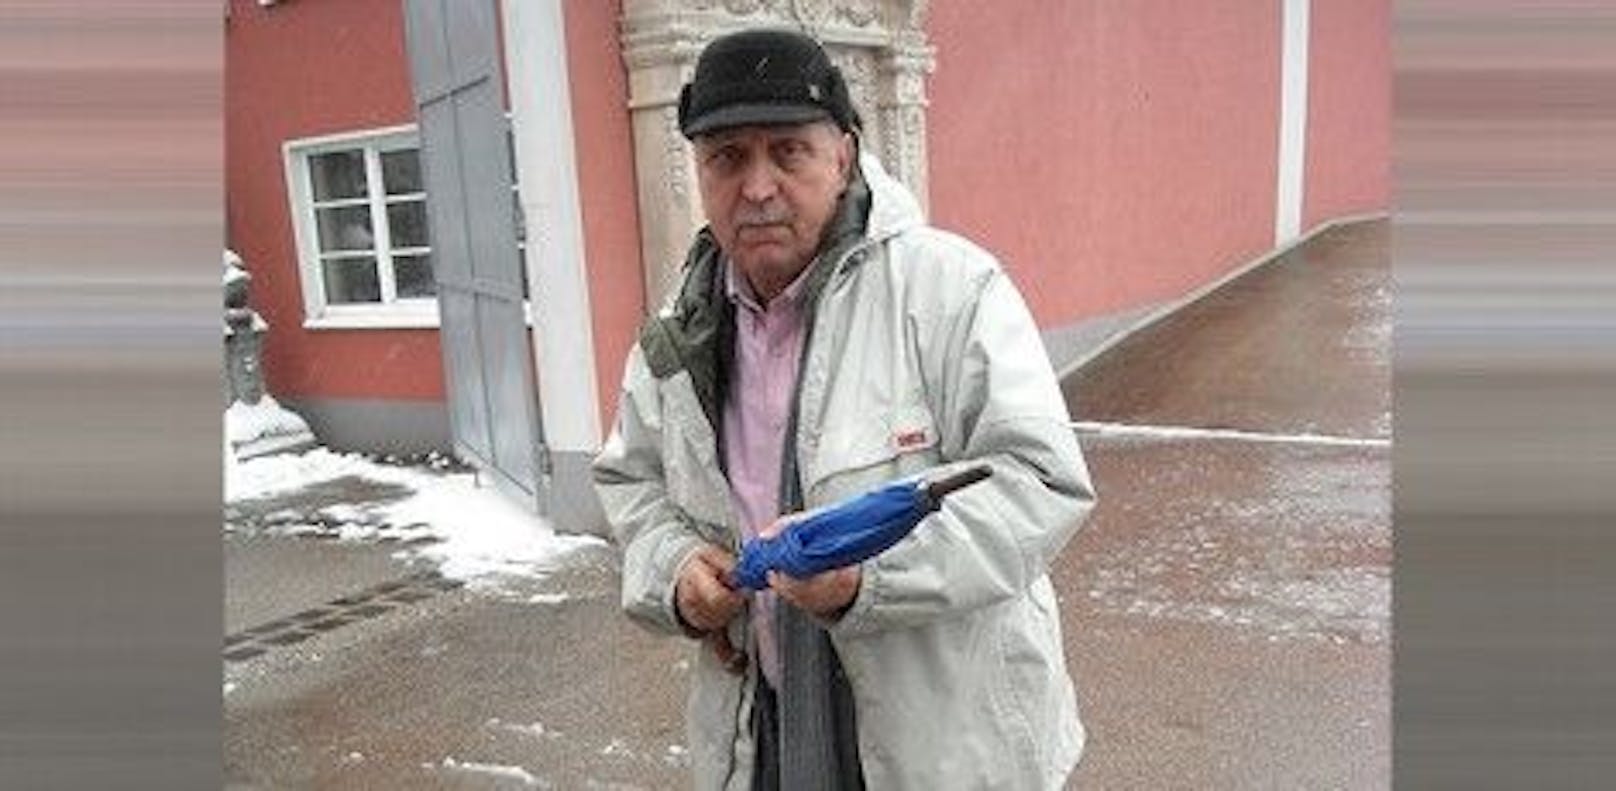 Ein Foto des Toten aus dem Jahr 2013. Francesco Gullino galt als Verdächtiger im "Regenschirm-Mord" von 1978 in London.